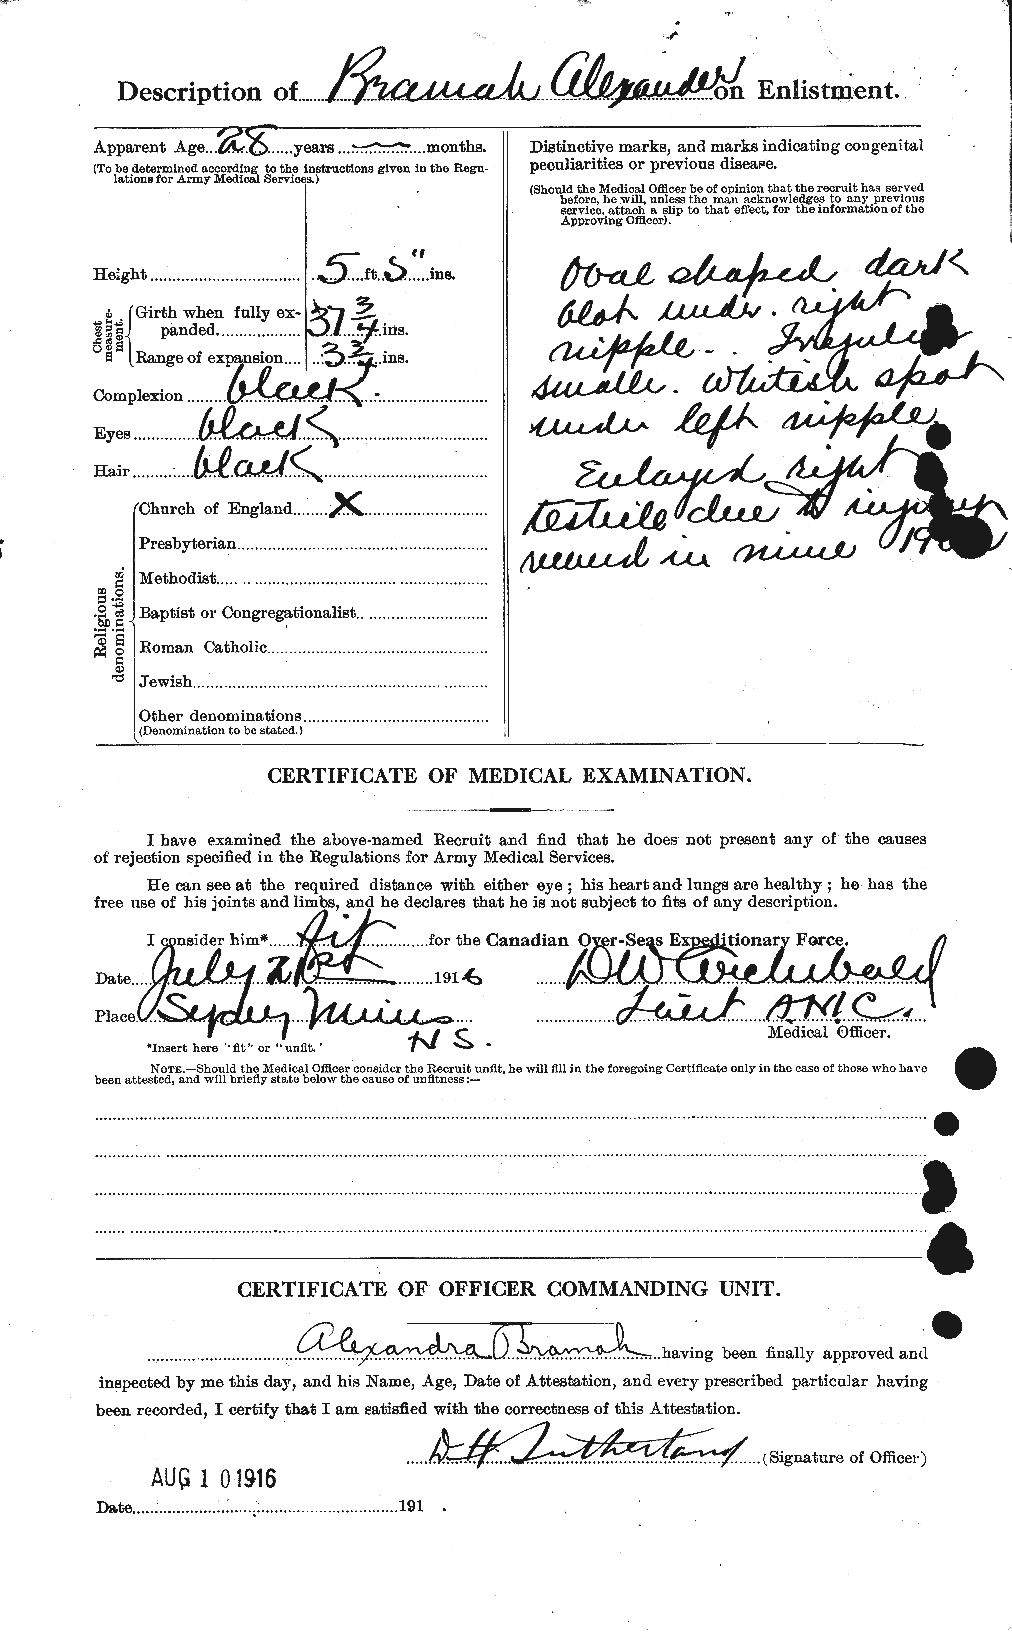 Dossiers du Personnel de la Première Guerre mondiale - CEC 259567b